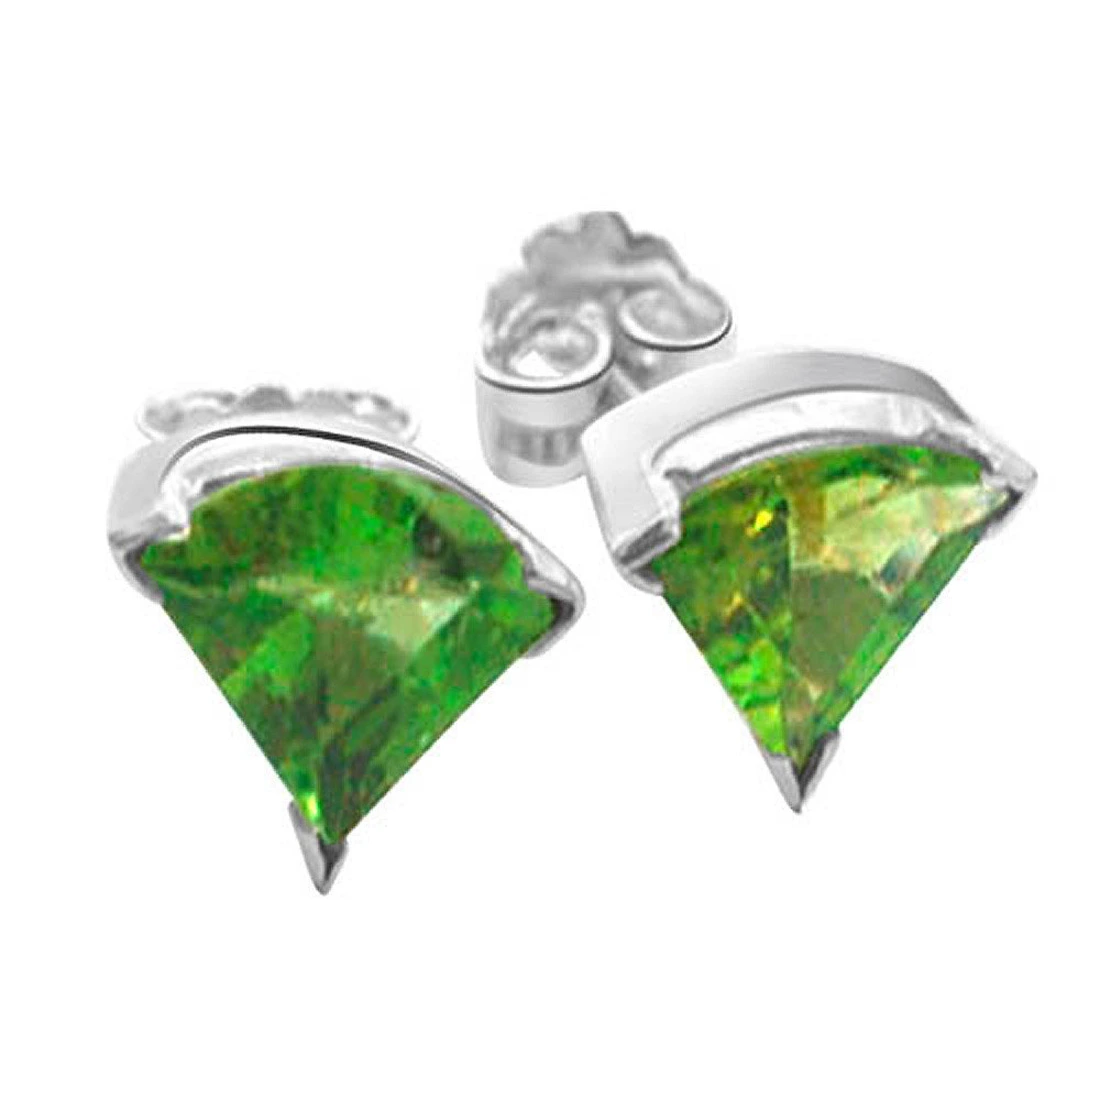 Bloom - Trillion shaped Green Peridot Gemstone & Sterling Silver Earrings for Women (SDS95)